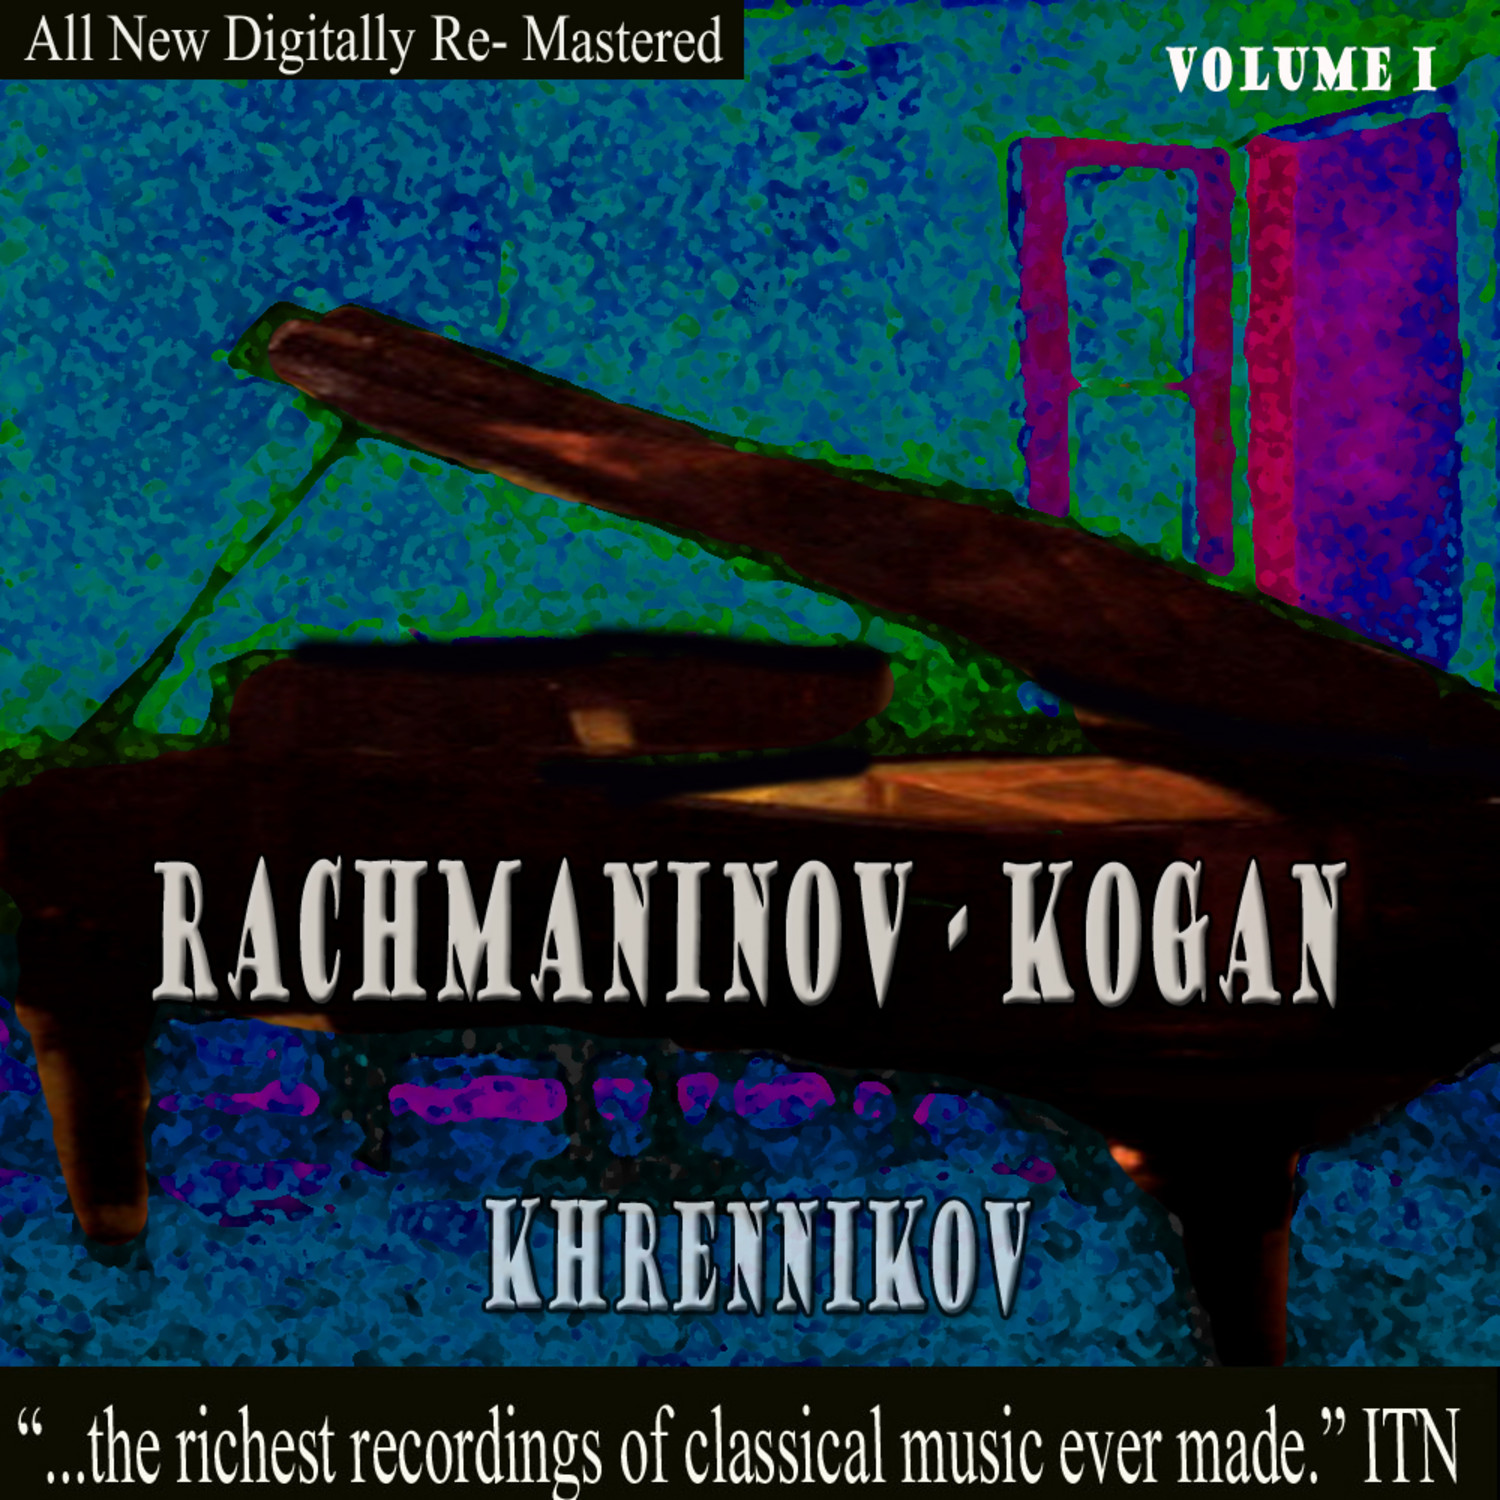 Rachmaninov: Kogan - Khrennikov, Volume 1